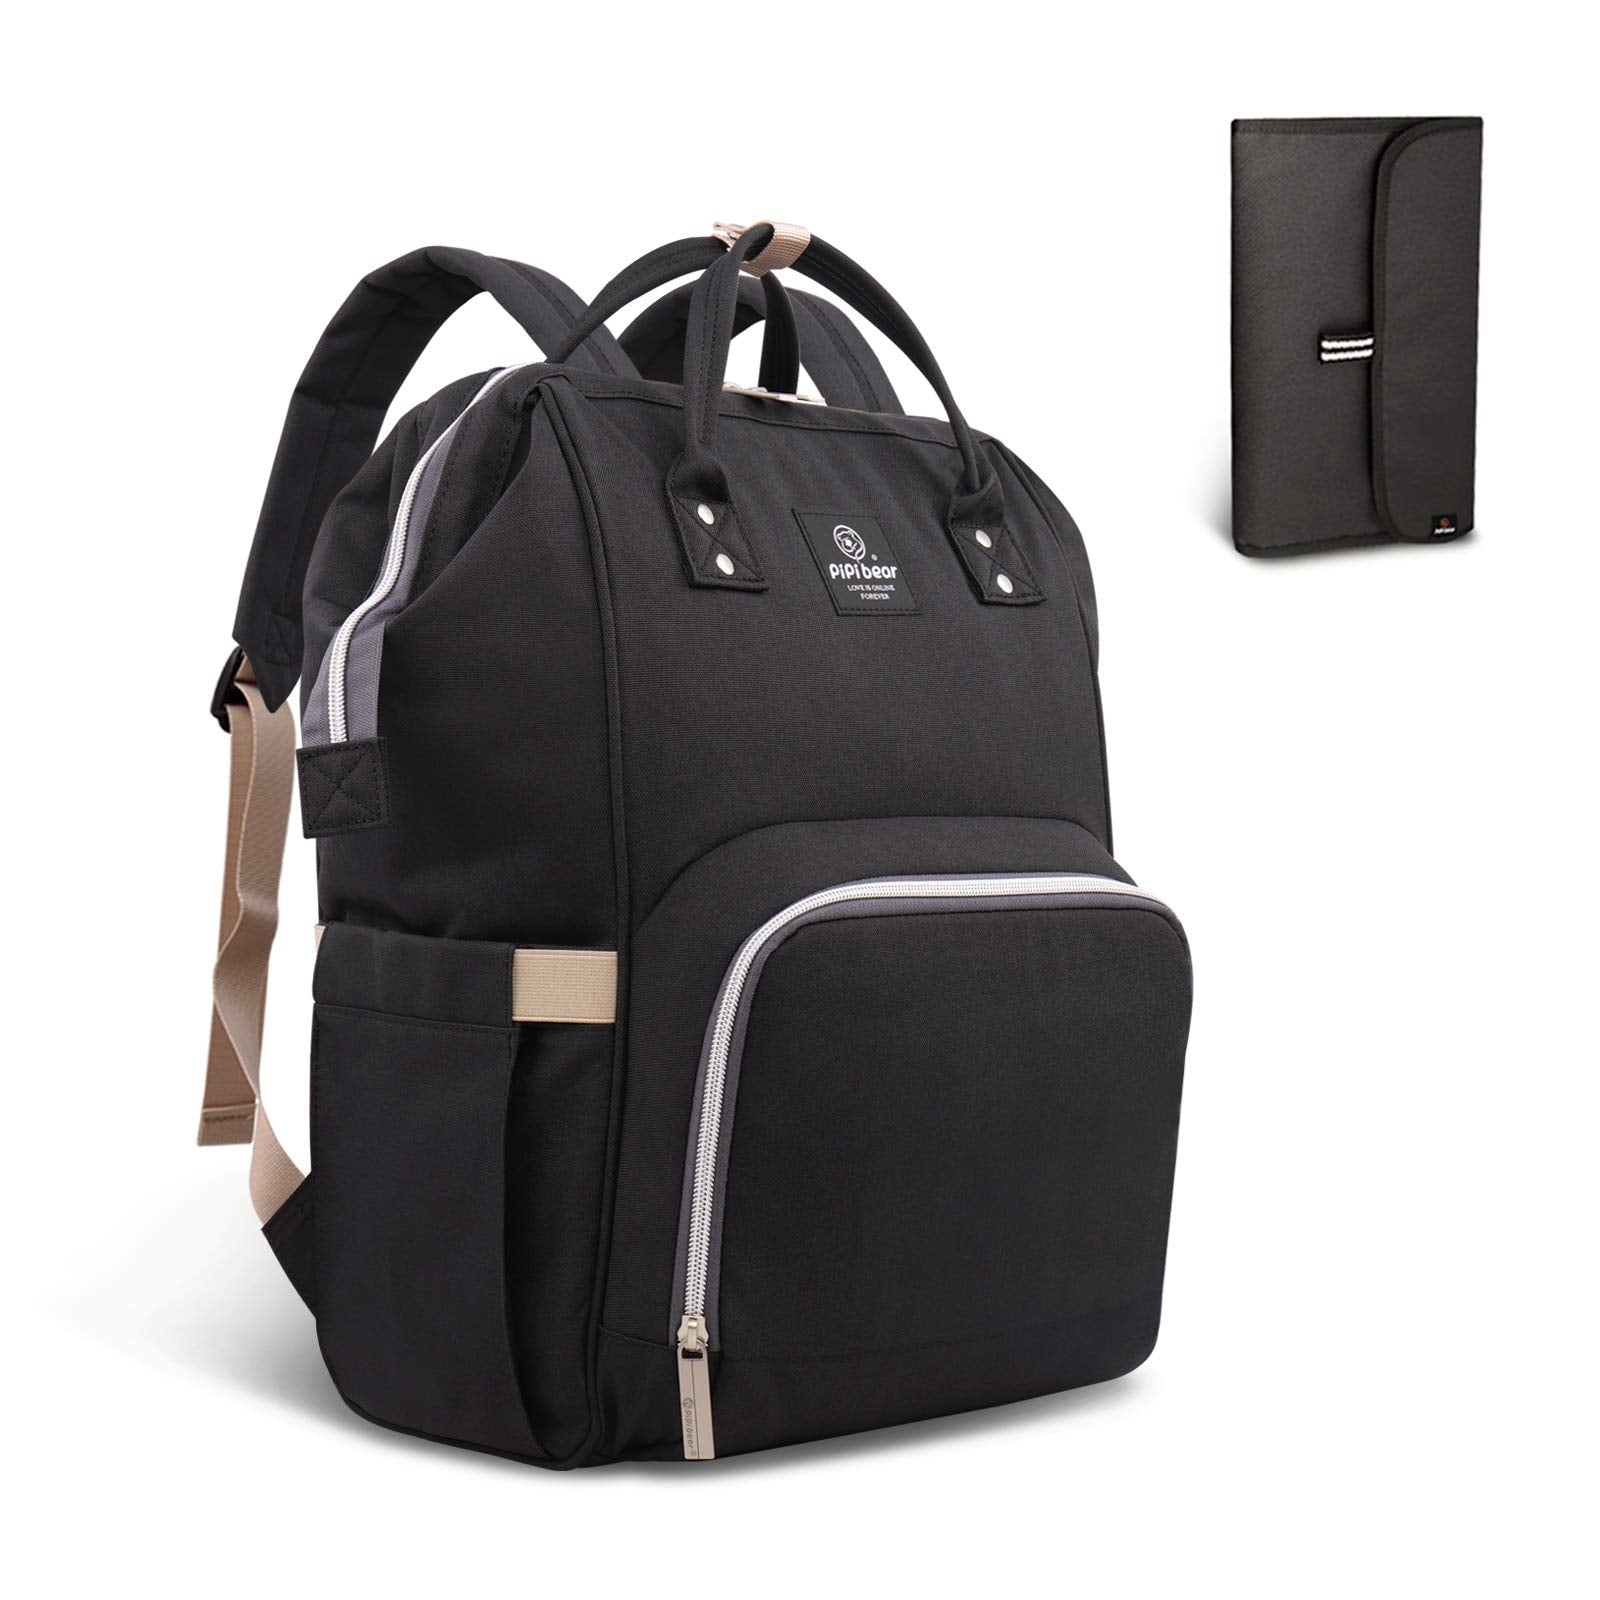 HEYI Diaper Tote Bag - Travel Backpack Organizer, Black